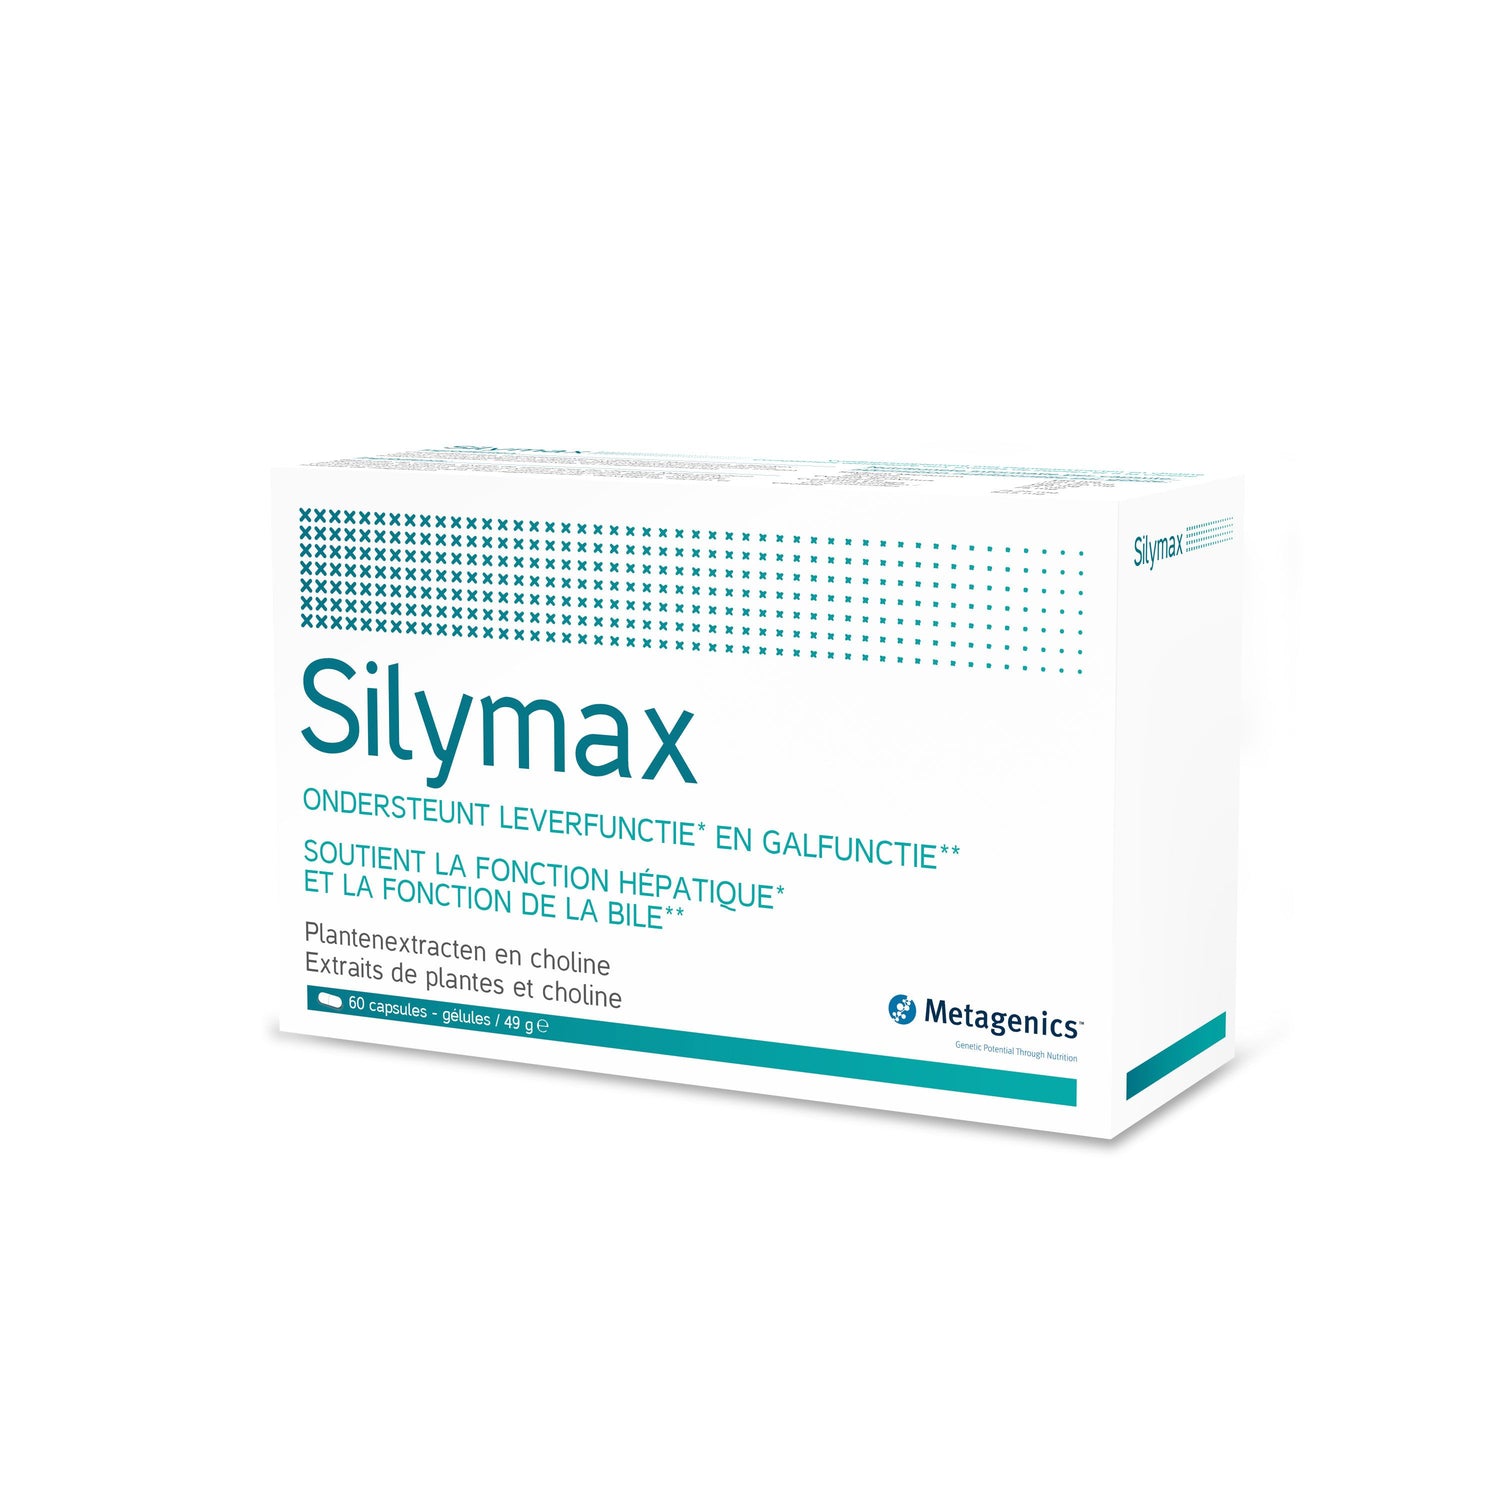 Silymax - Action sur le nettoyage du foie et la vésicule biliaire